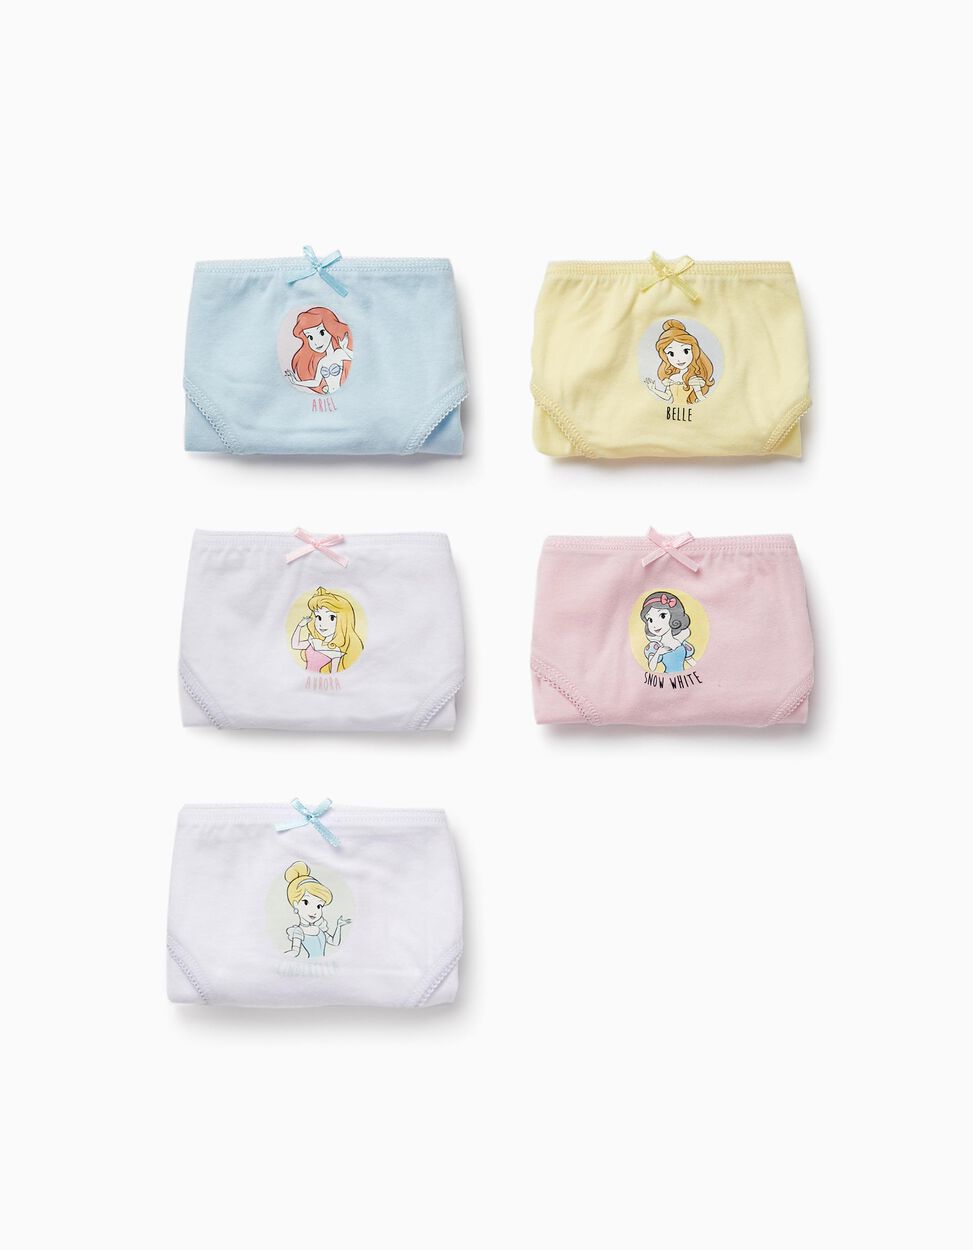 Disney Princess Underwear Pack of 5 - Belle Cinderella Aurora